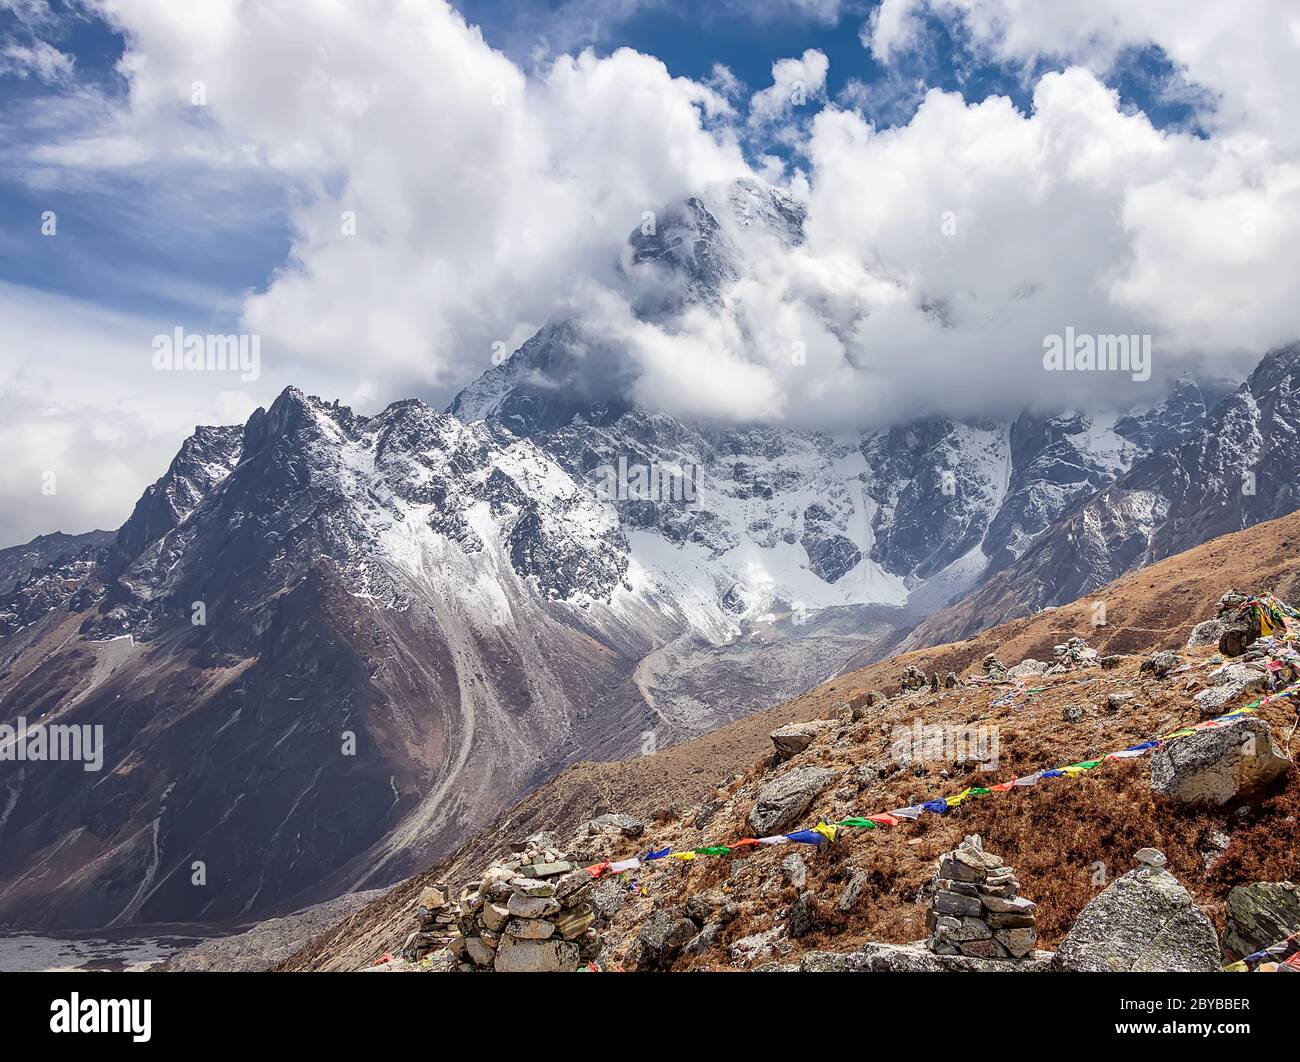 Route vers le camp de base Everest. Vue sur la moraine et les montagnes. Parc national de Sagarmatha, vallée de Khumbu, Népal Banque D'Images